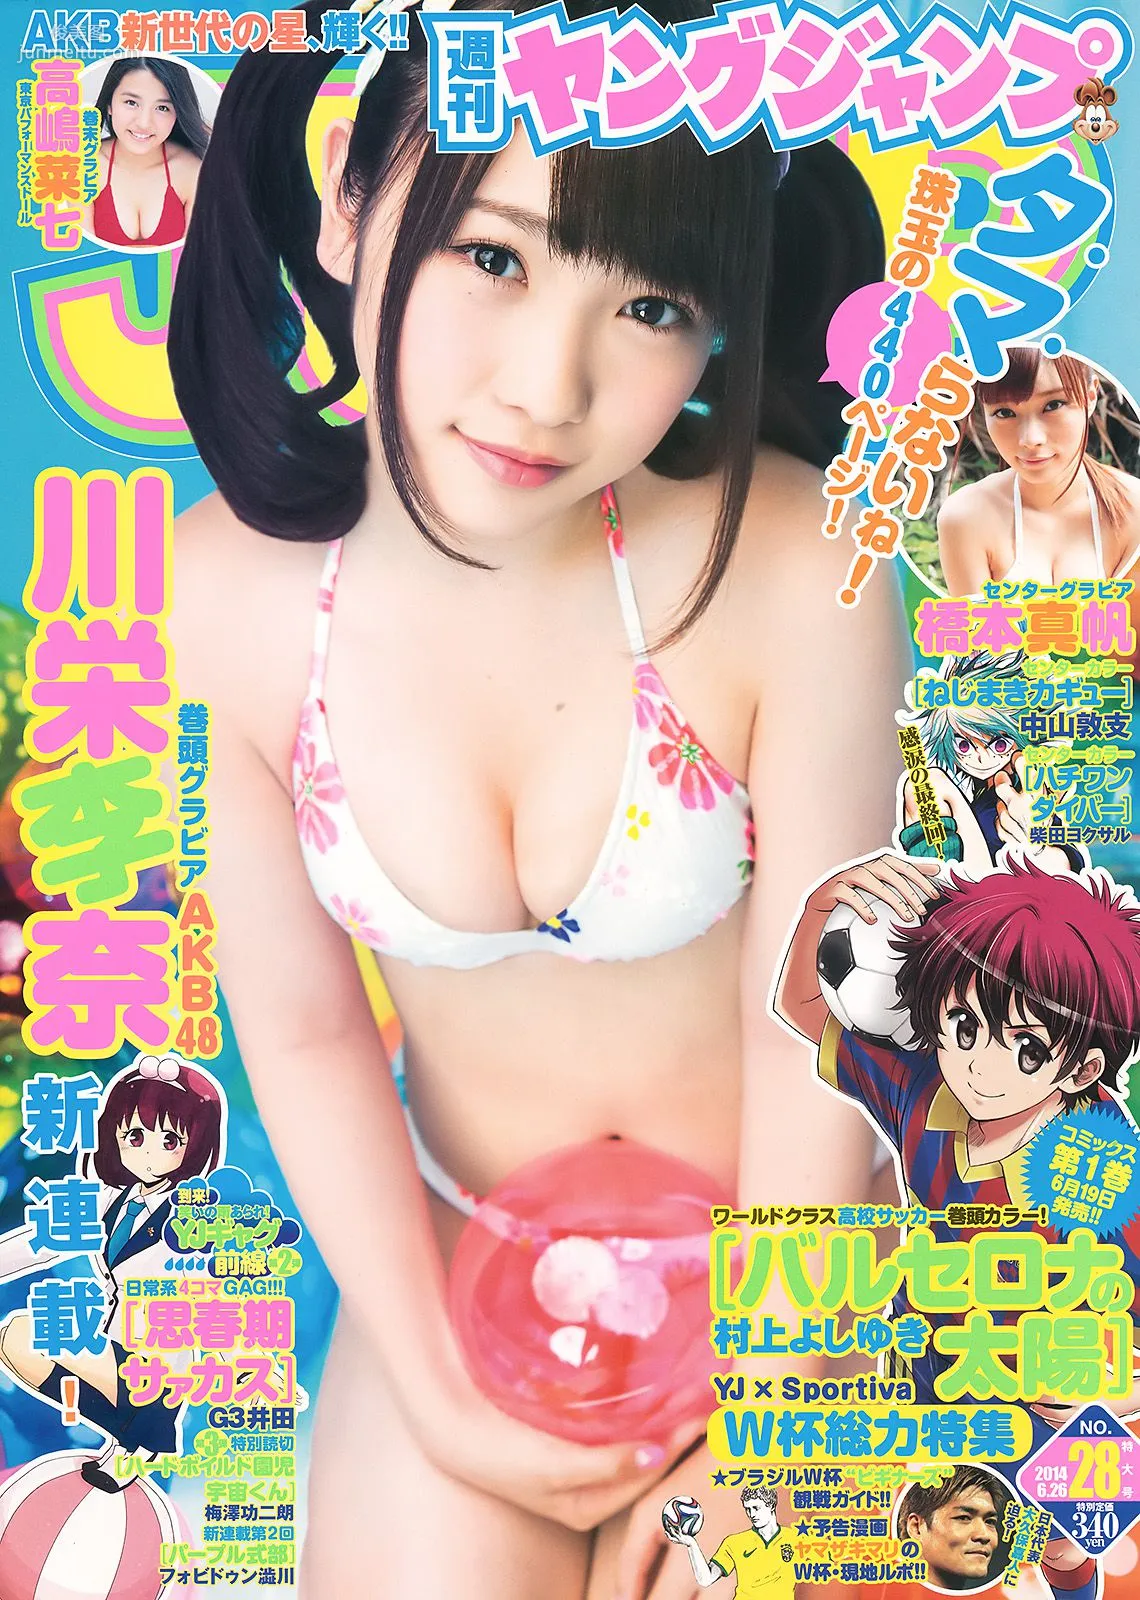 川栄李奈 橋本真帆 高嶋菜七 [Weekly Young Jump] 2014年No.28 写真杂志1